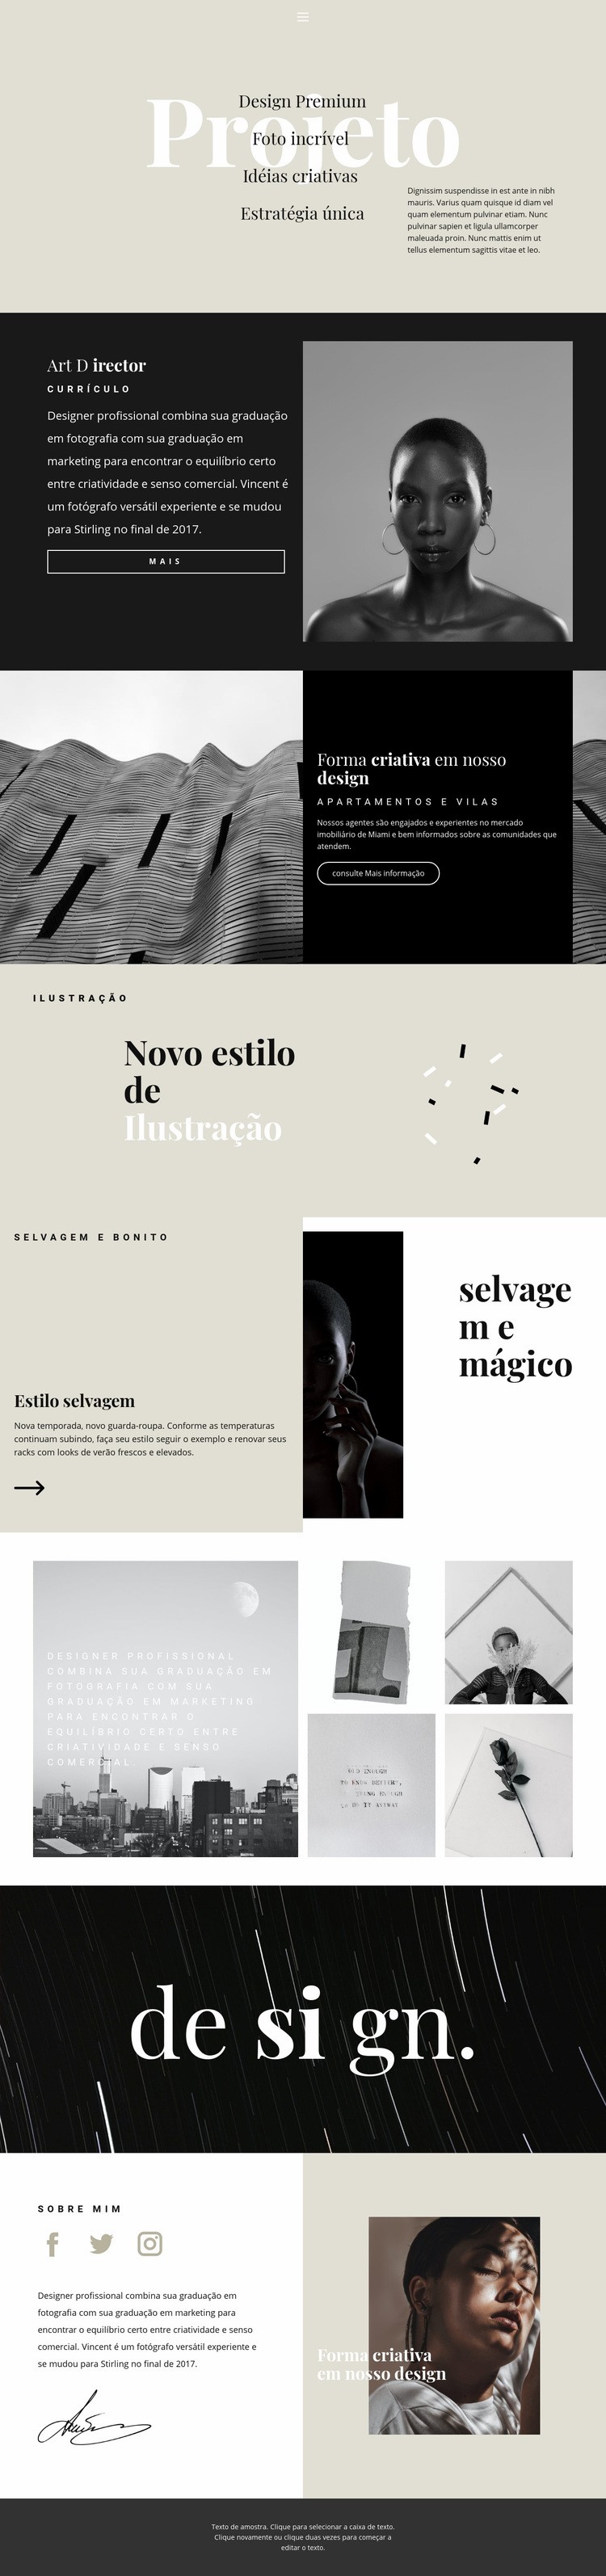 Direcções do estúdio de design Maquete do site